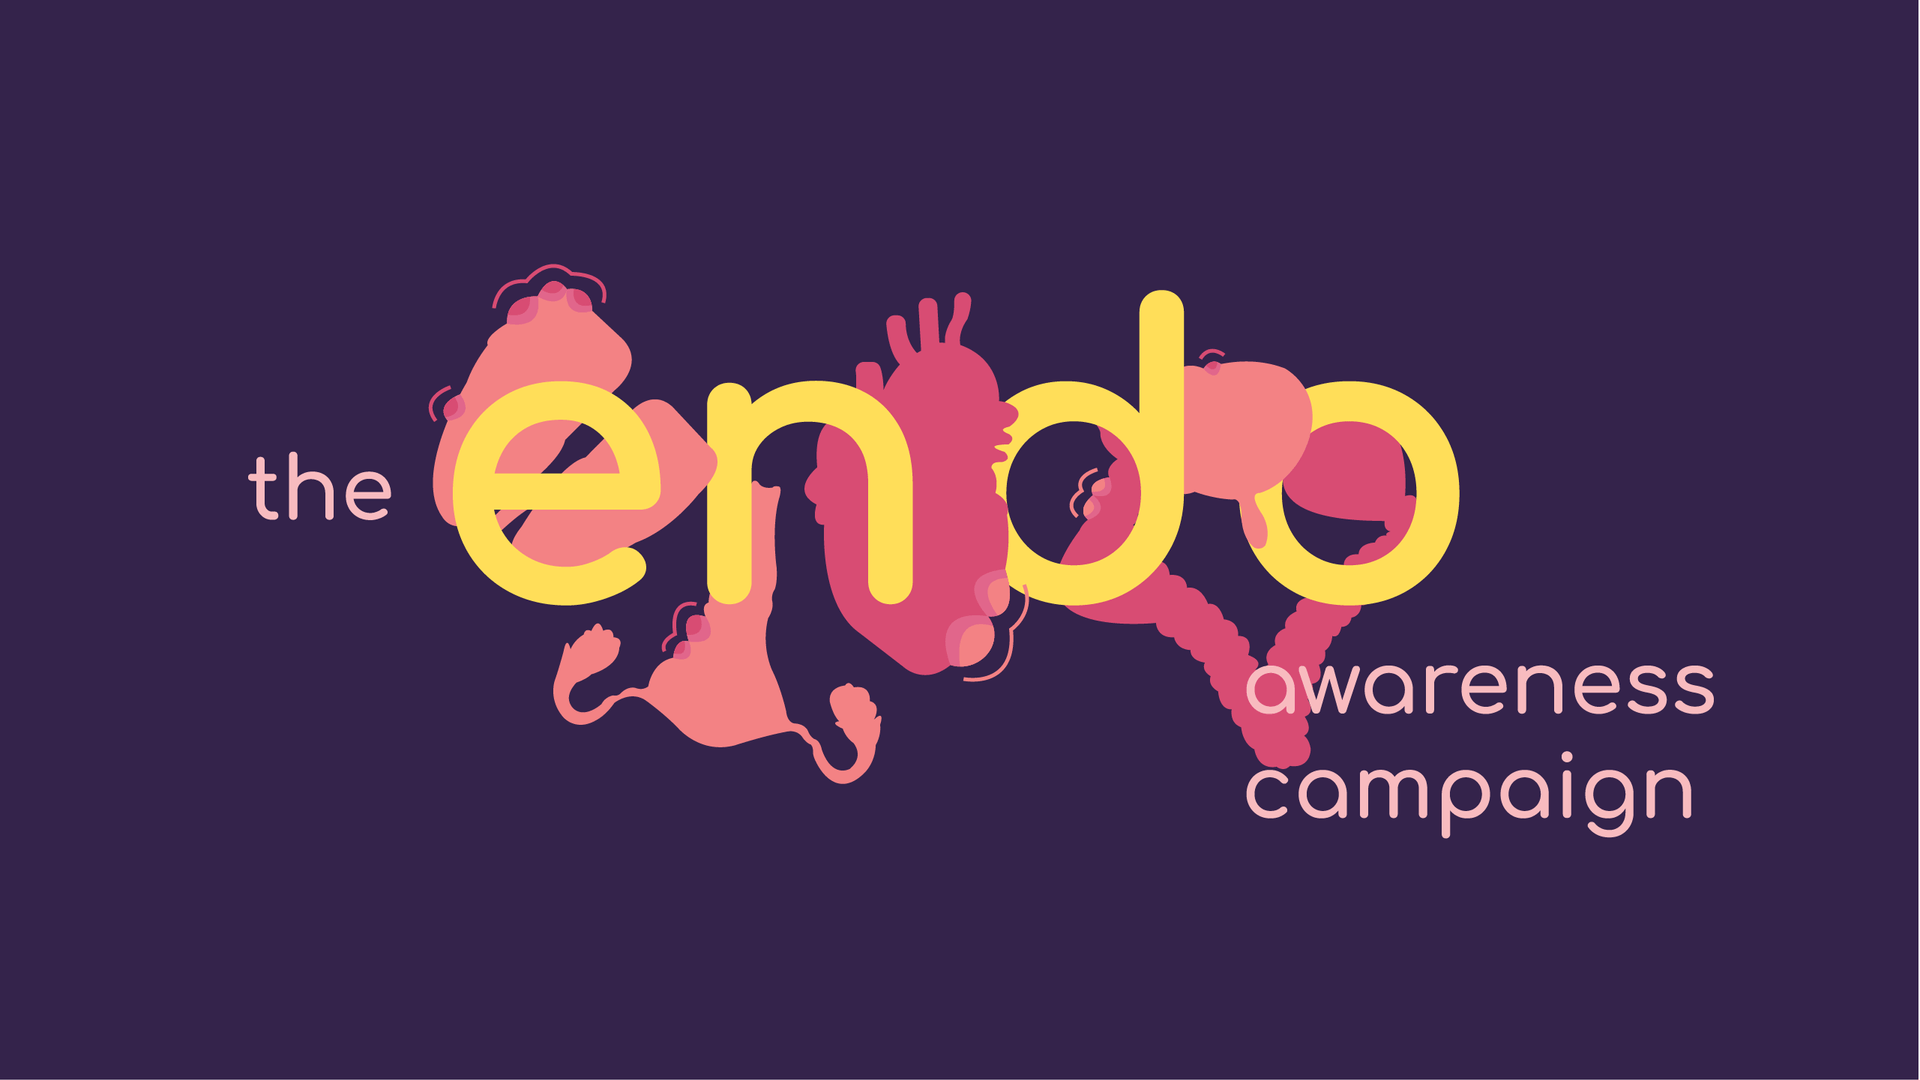 Endo Campaign